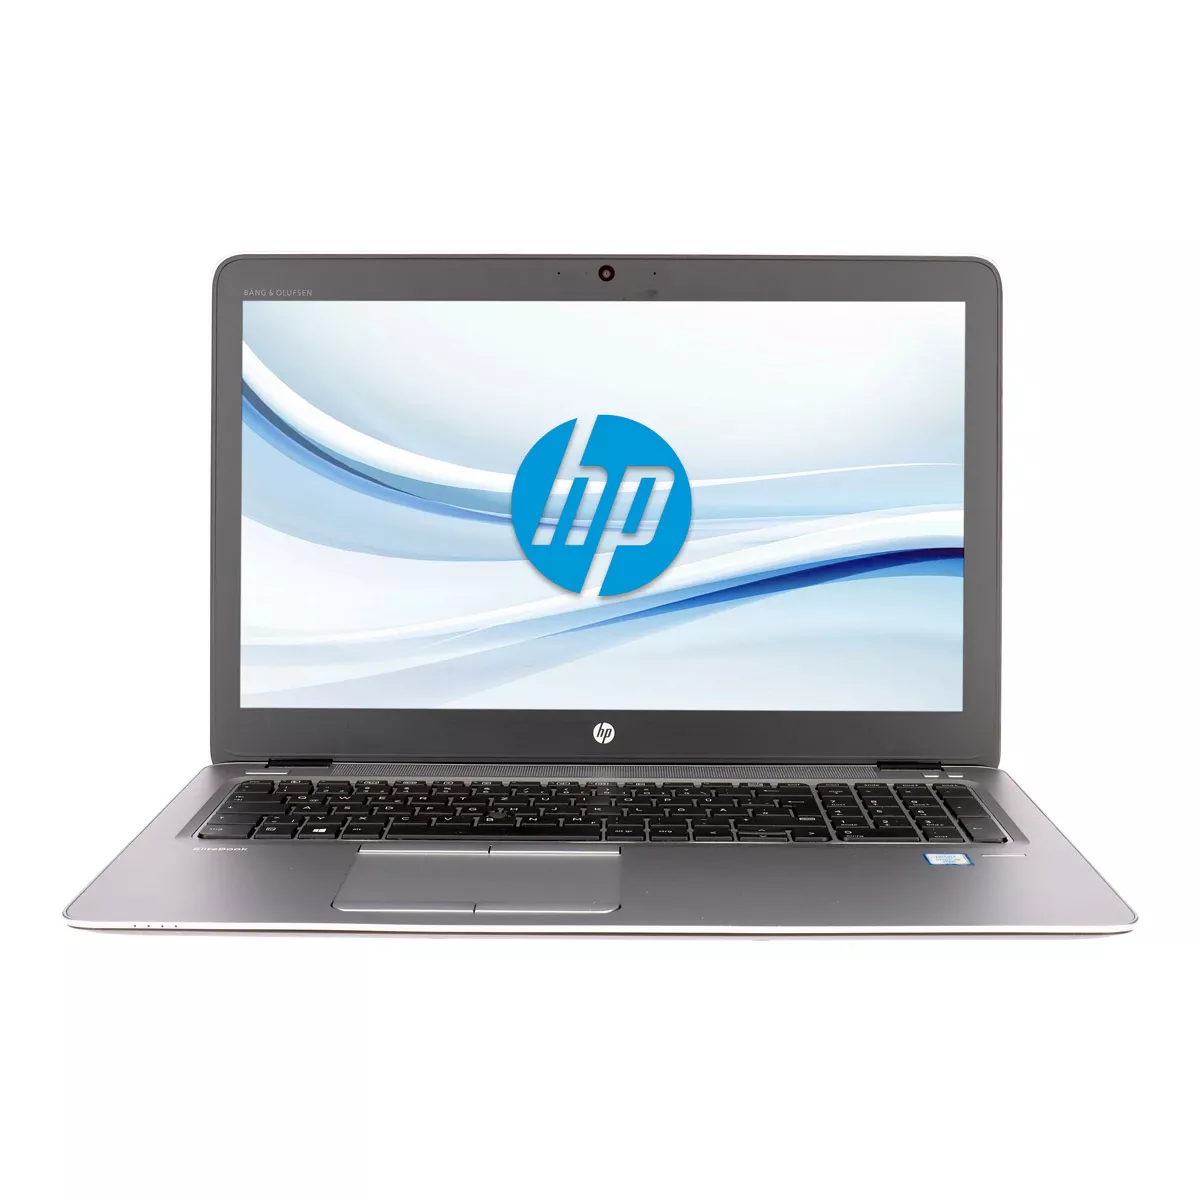 HP EliteBook 850 G3 Core i7 6600U Full-HD 16 GB 500 GB M.2 SSD Webcam A+